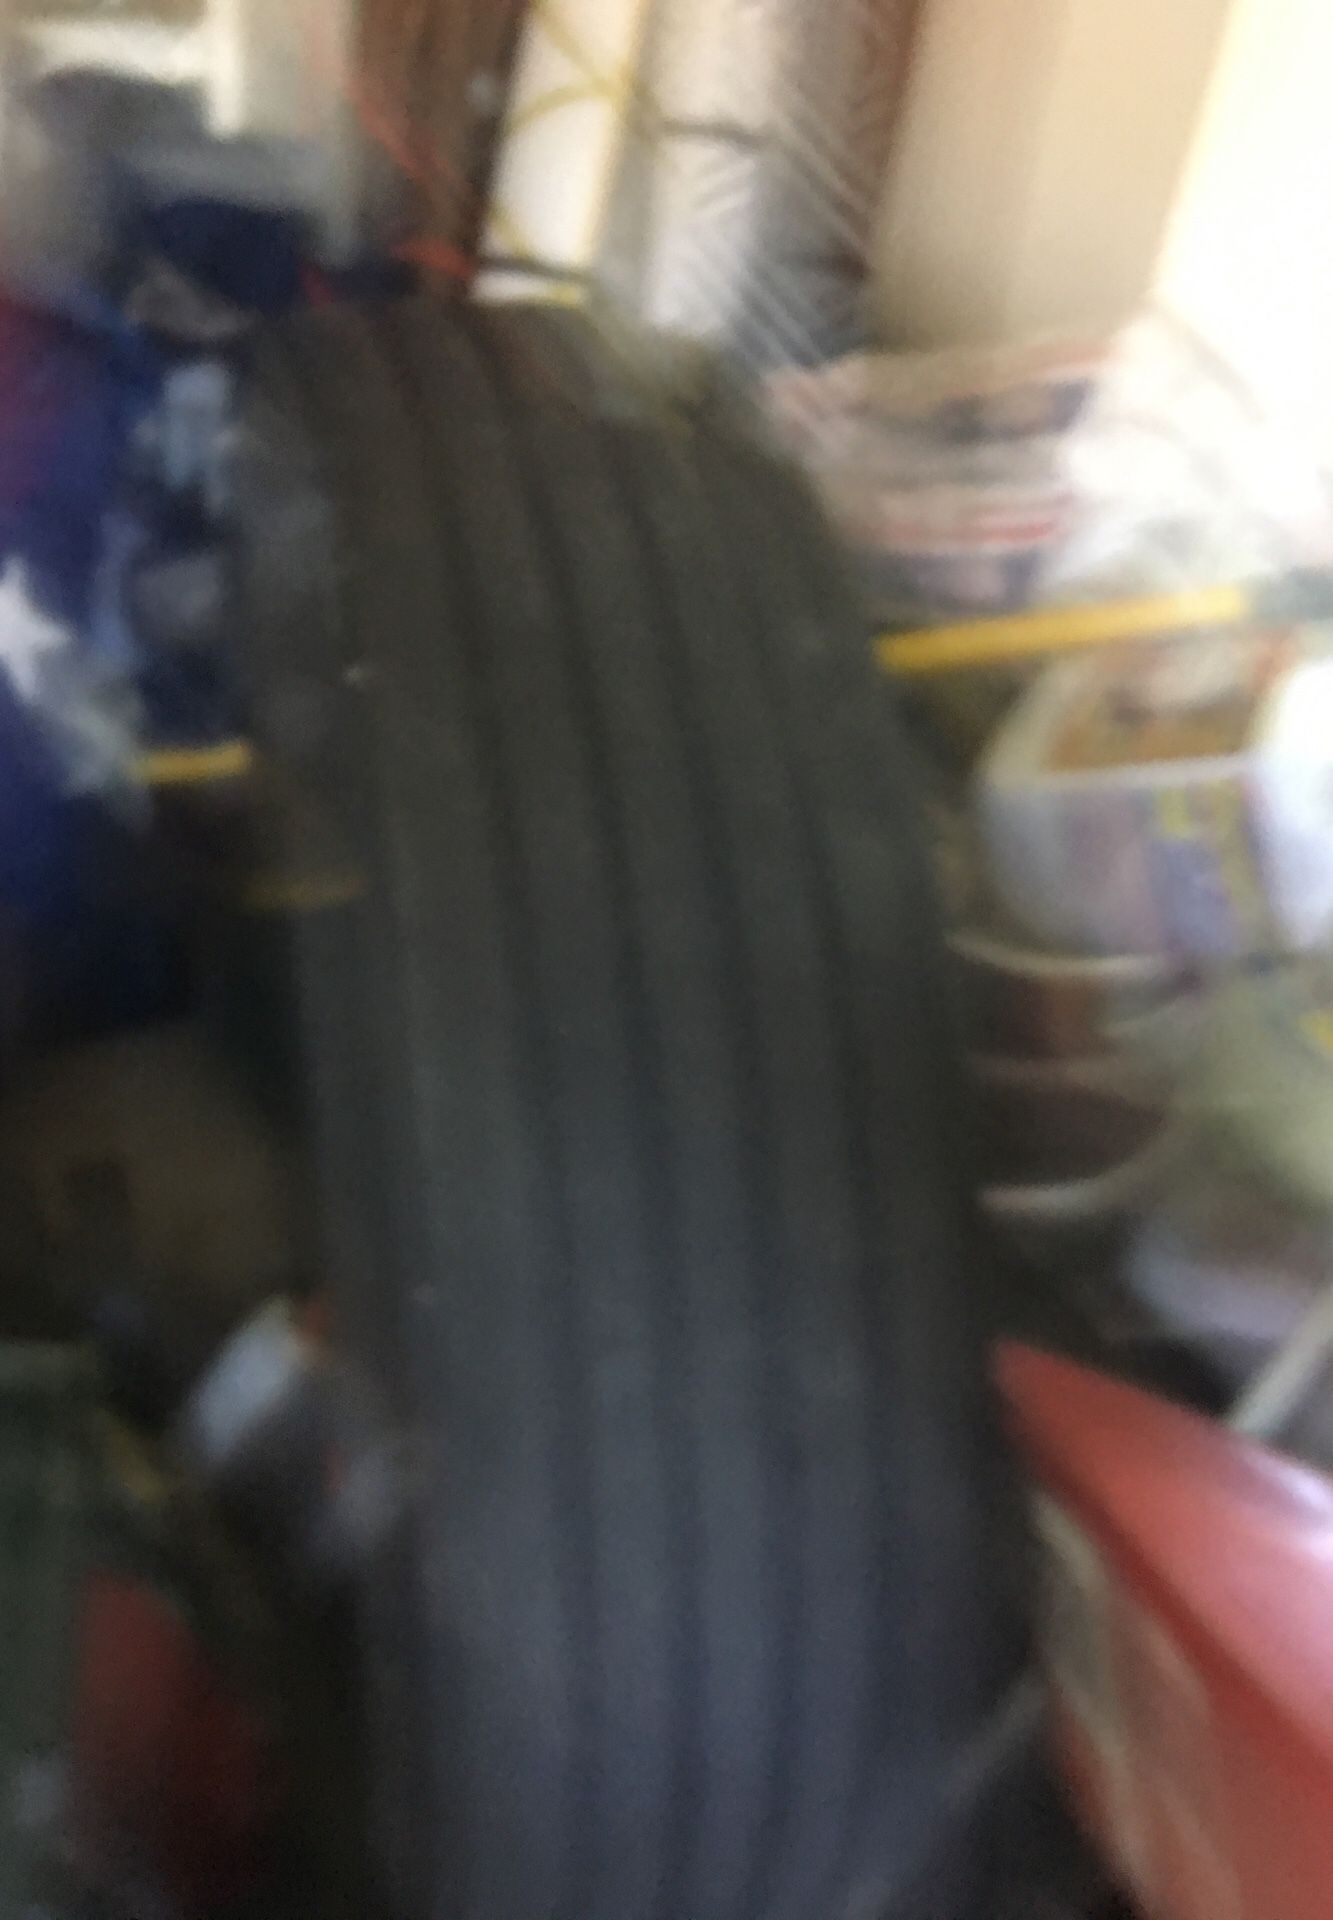 Toyo 295/75 R22.5 tire